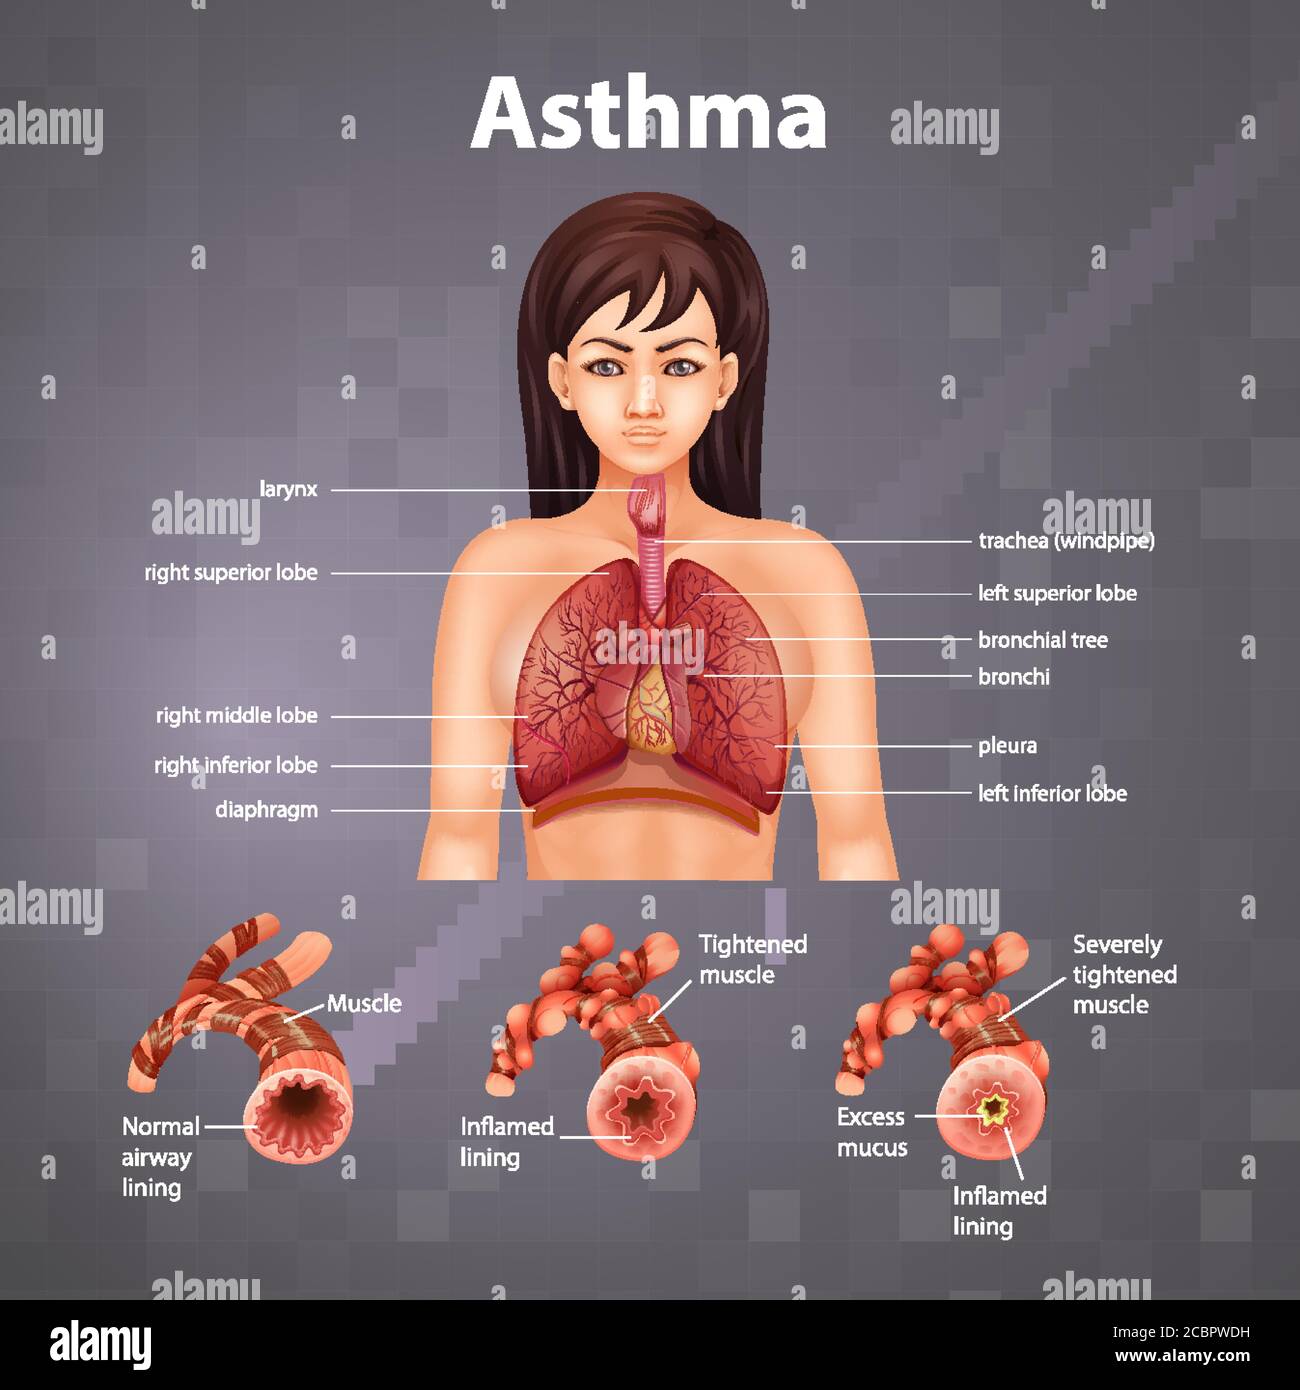 Vergleich von gesunder Lunge und asthmatischer Lunge Abbildung Stock Vektor